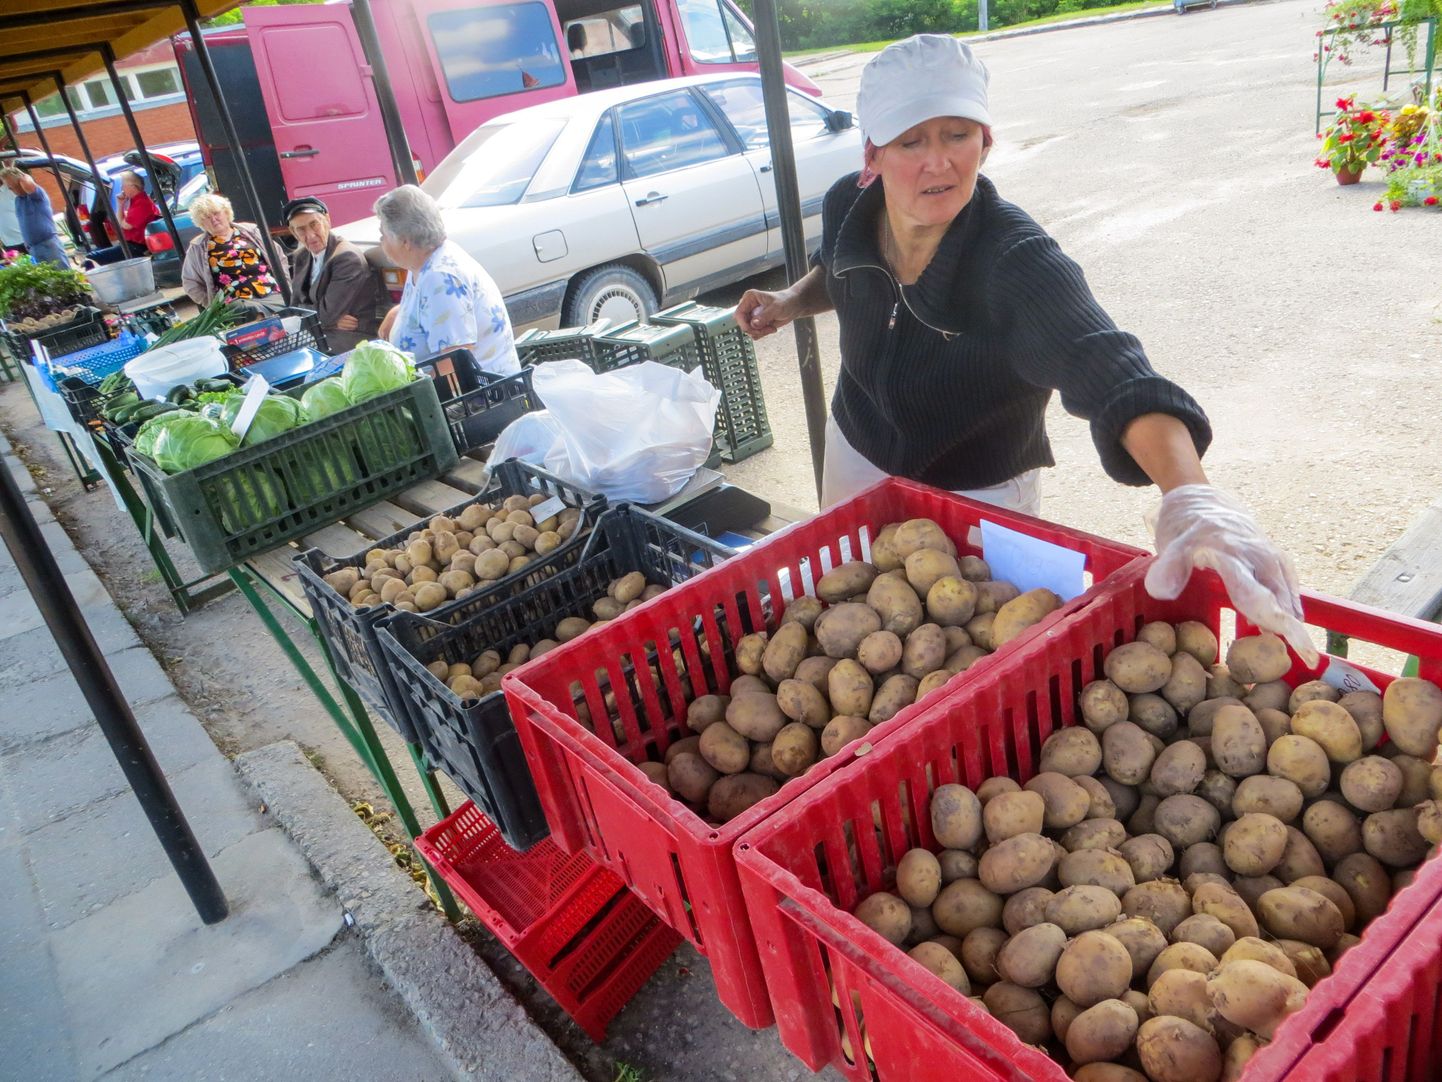 Lätlanna Rudite Tentere müüb Valka turul uut kartulisorti. Pisut madalamad hinnad on müüja väitel sel aastal meelitanud varasemast rohkem eestlasi üle piiri kartuleid ostma.